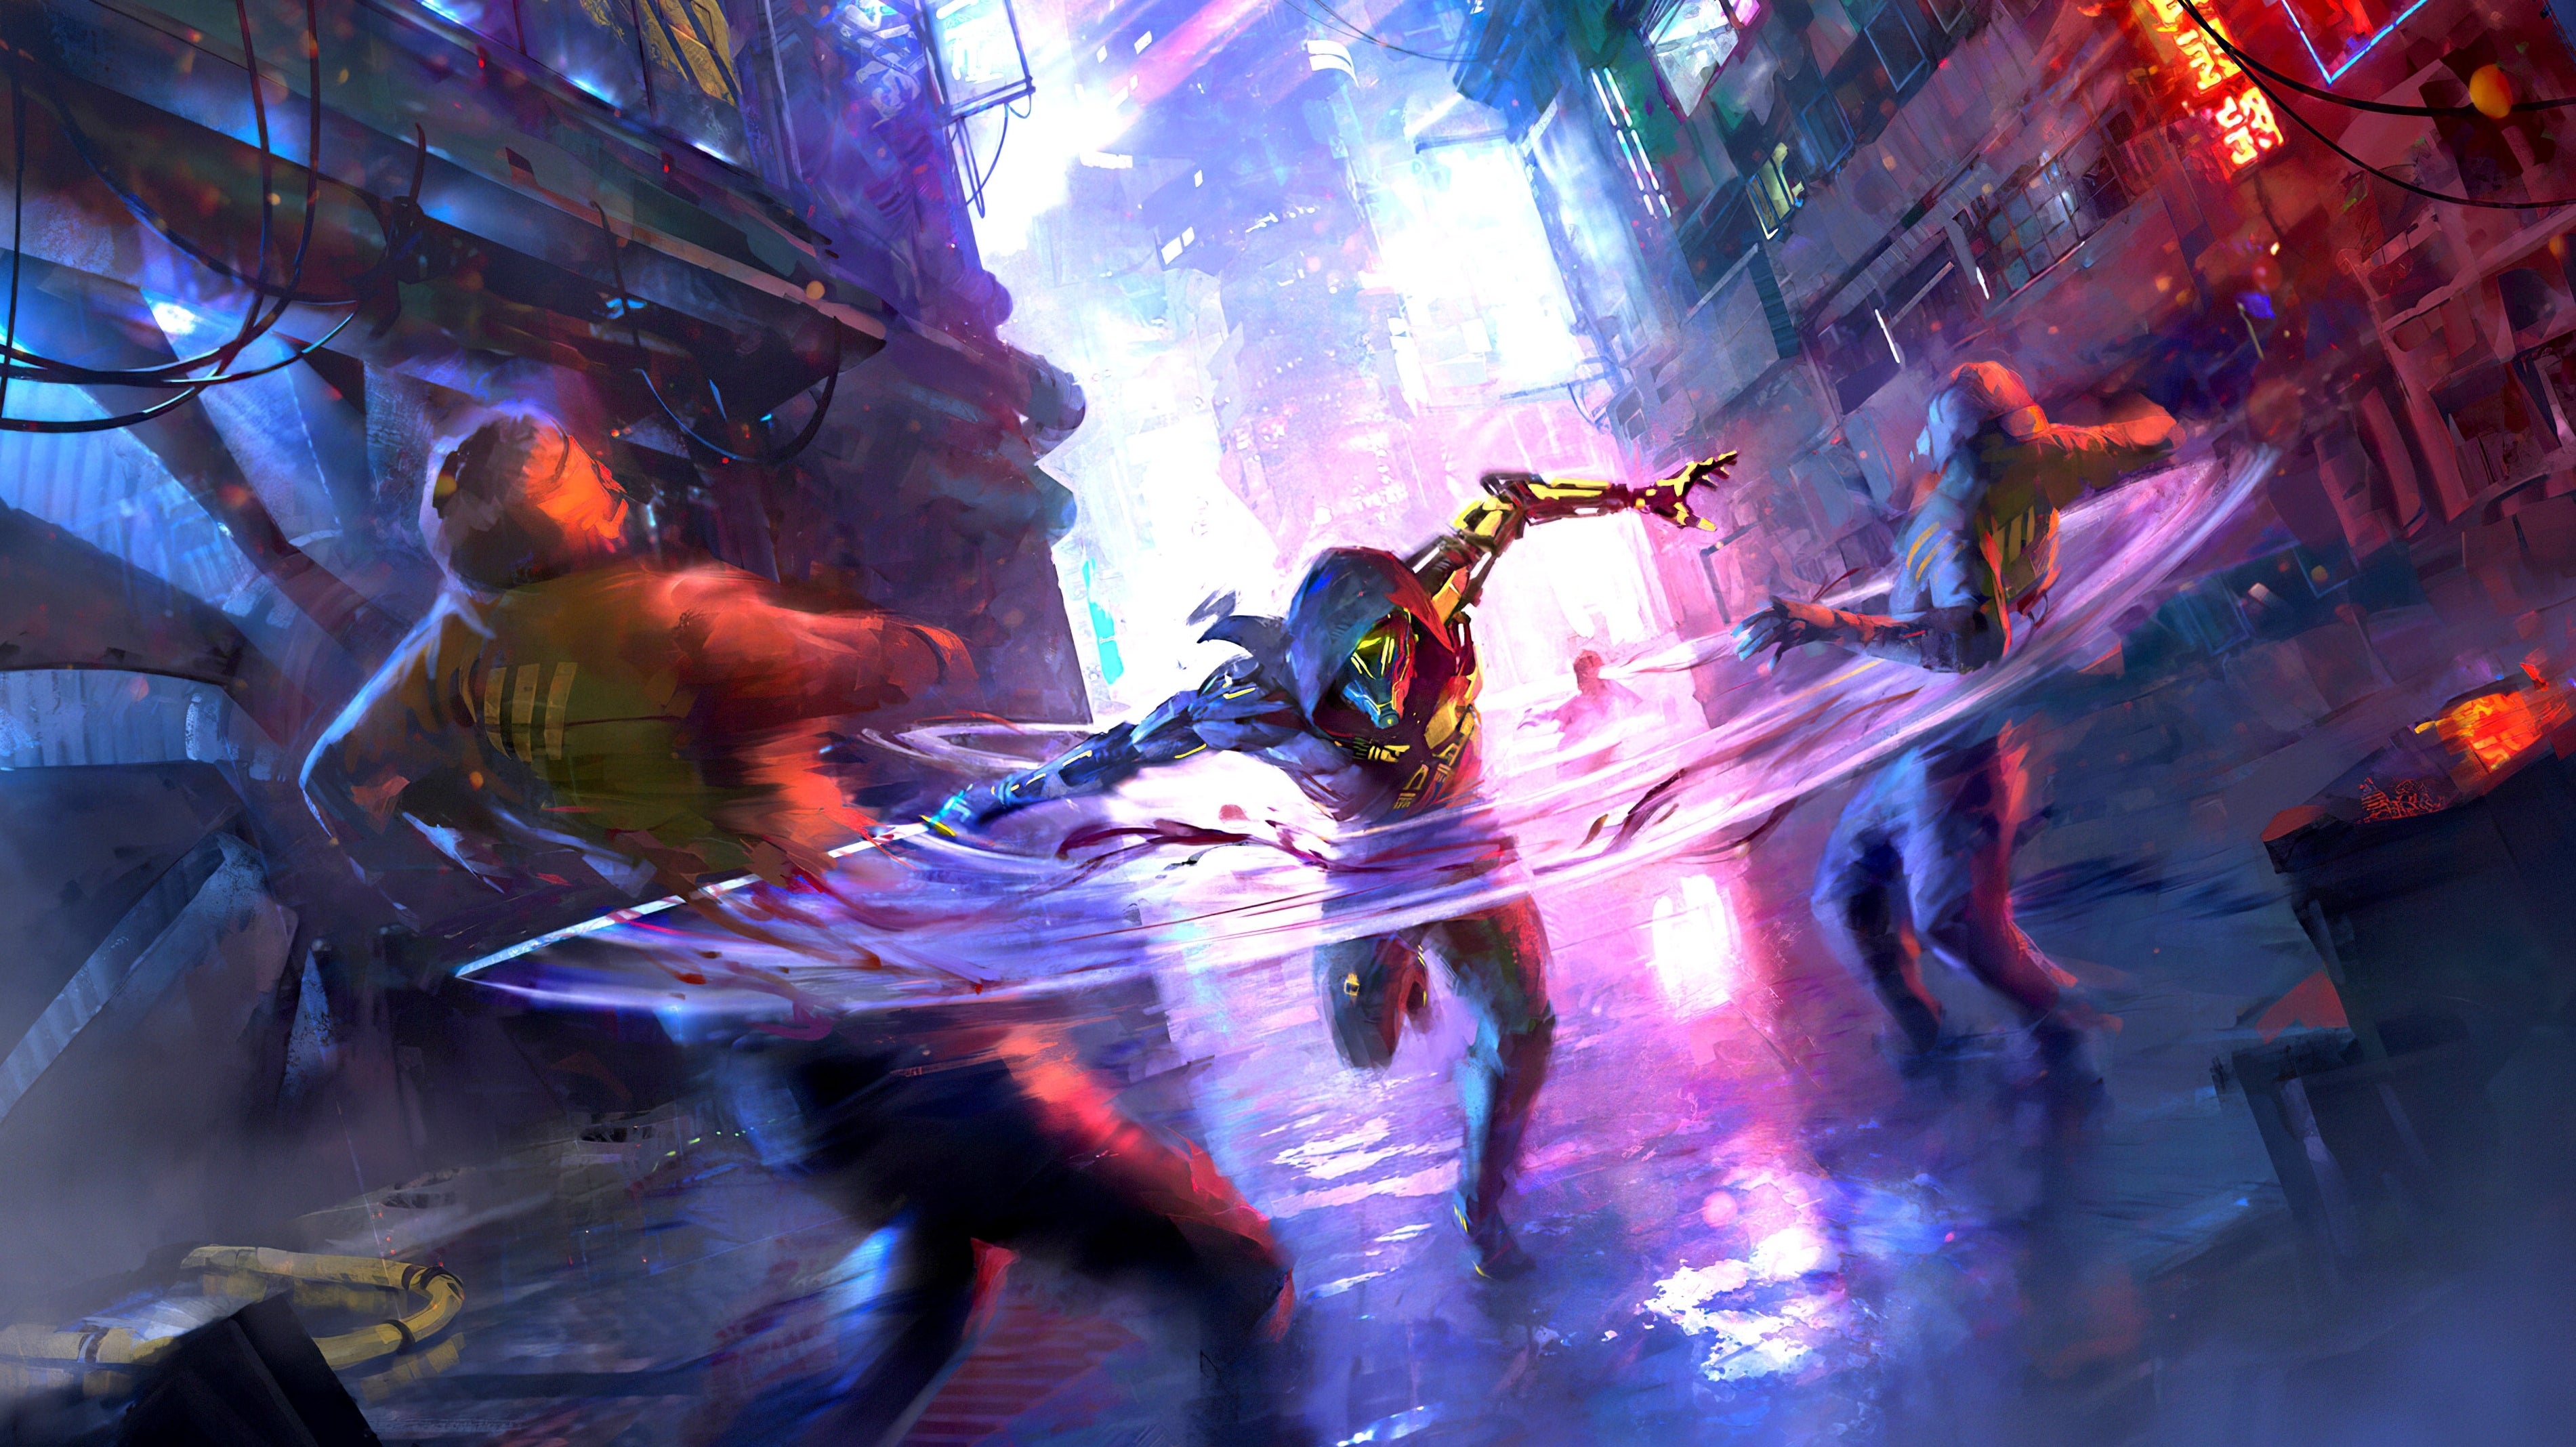 Immagine di Ghostrunner: l'action dalle atmosfere cyberpunk che unisce Dishonored e Mirror's Edge ha una data di uscita